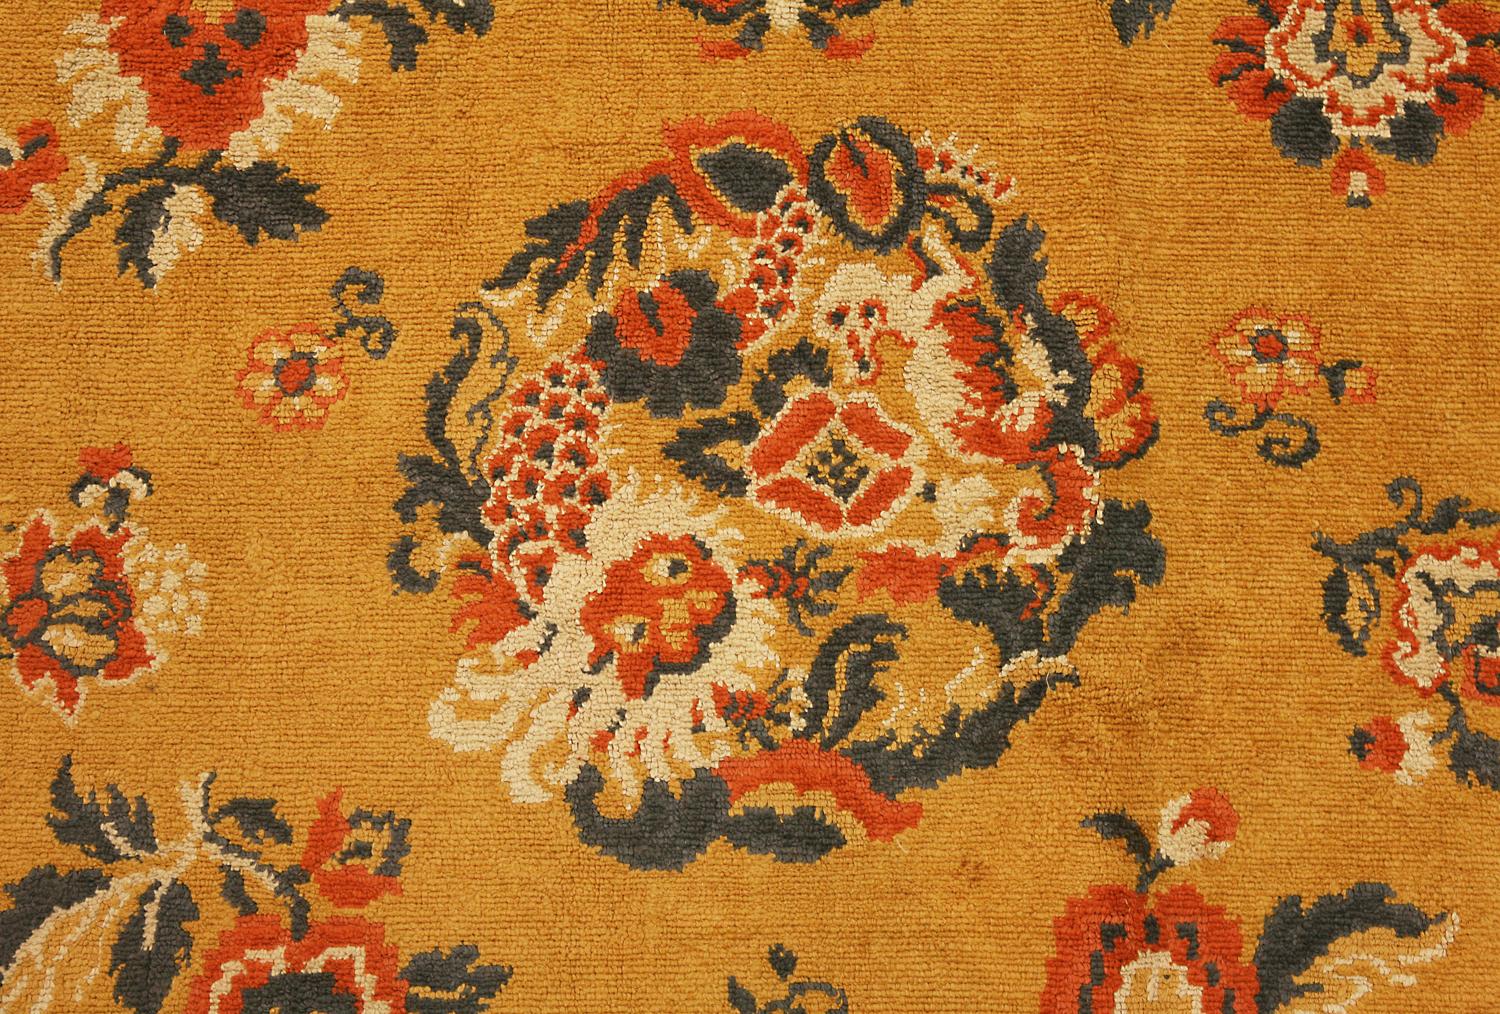 Dies ist ein halb-antikes chinesisches Samttextil, das in der ersten Hälfte des 20. Jahrhunderts gewebt wurde, etwa 
1940s. Dieses Textil hat ein All-Over-Field-Design, das aus traditionellen chinesischen Motiven besteht, die 
aus blühenden